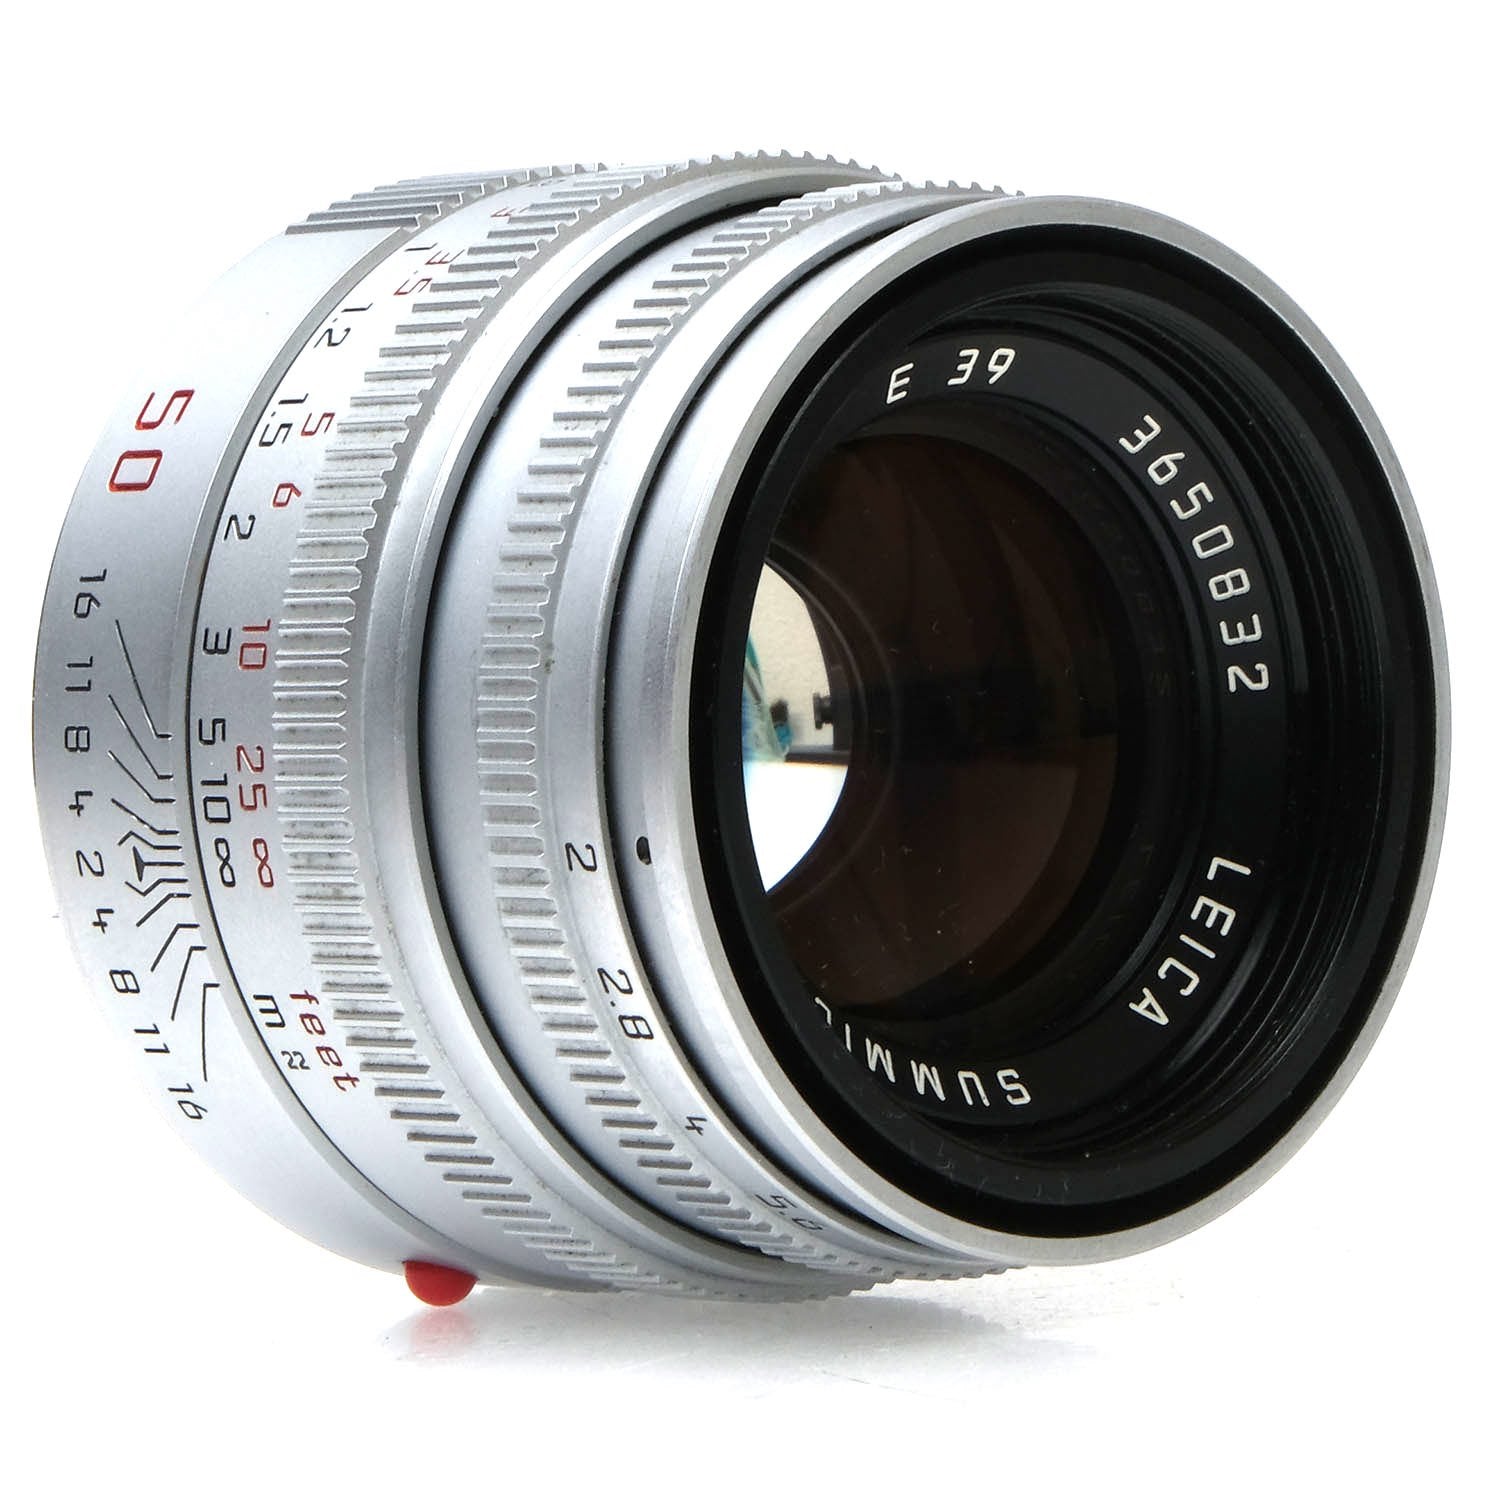 Leica 50mm F2.0 Summicron-M V5